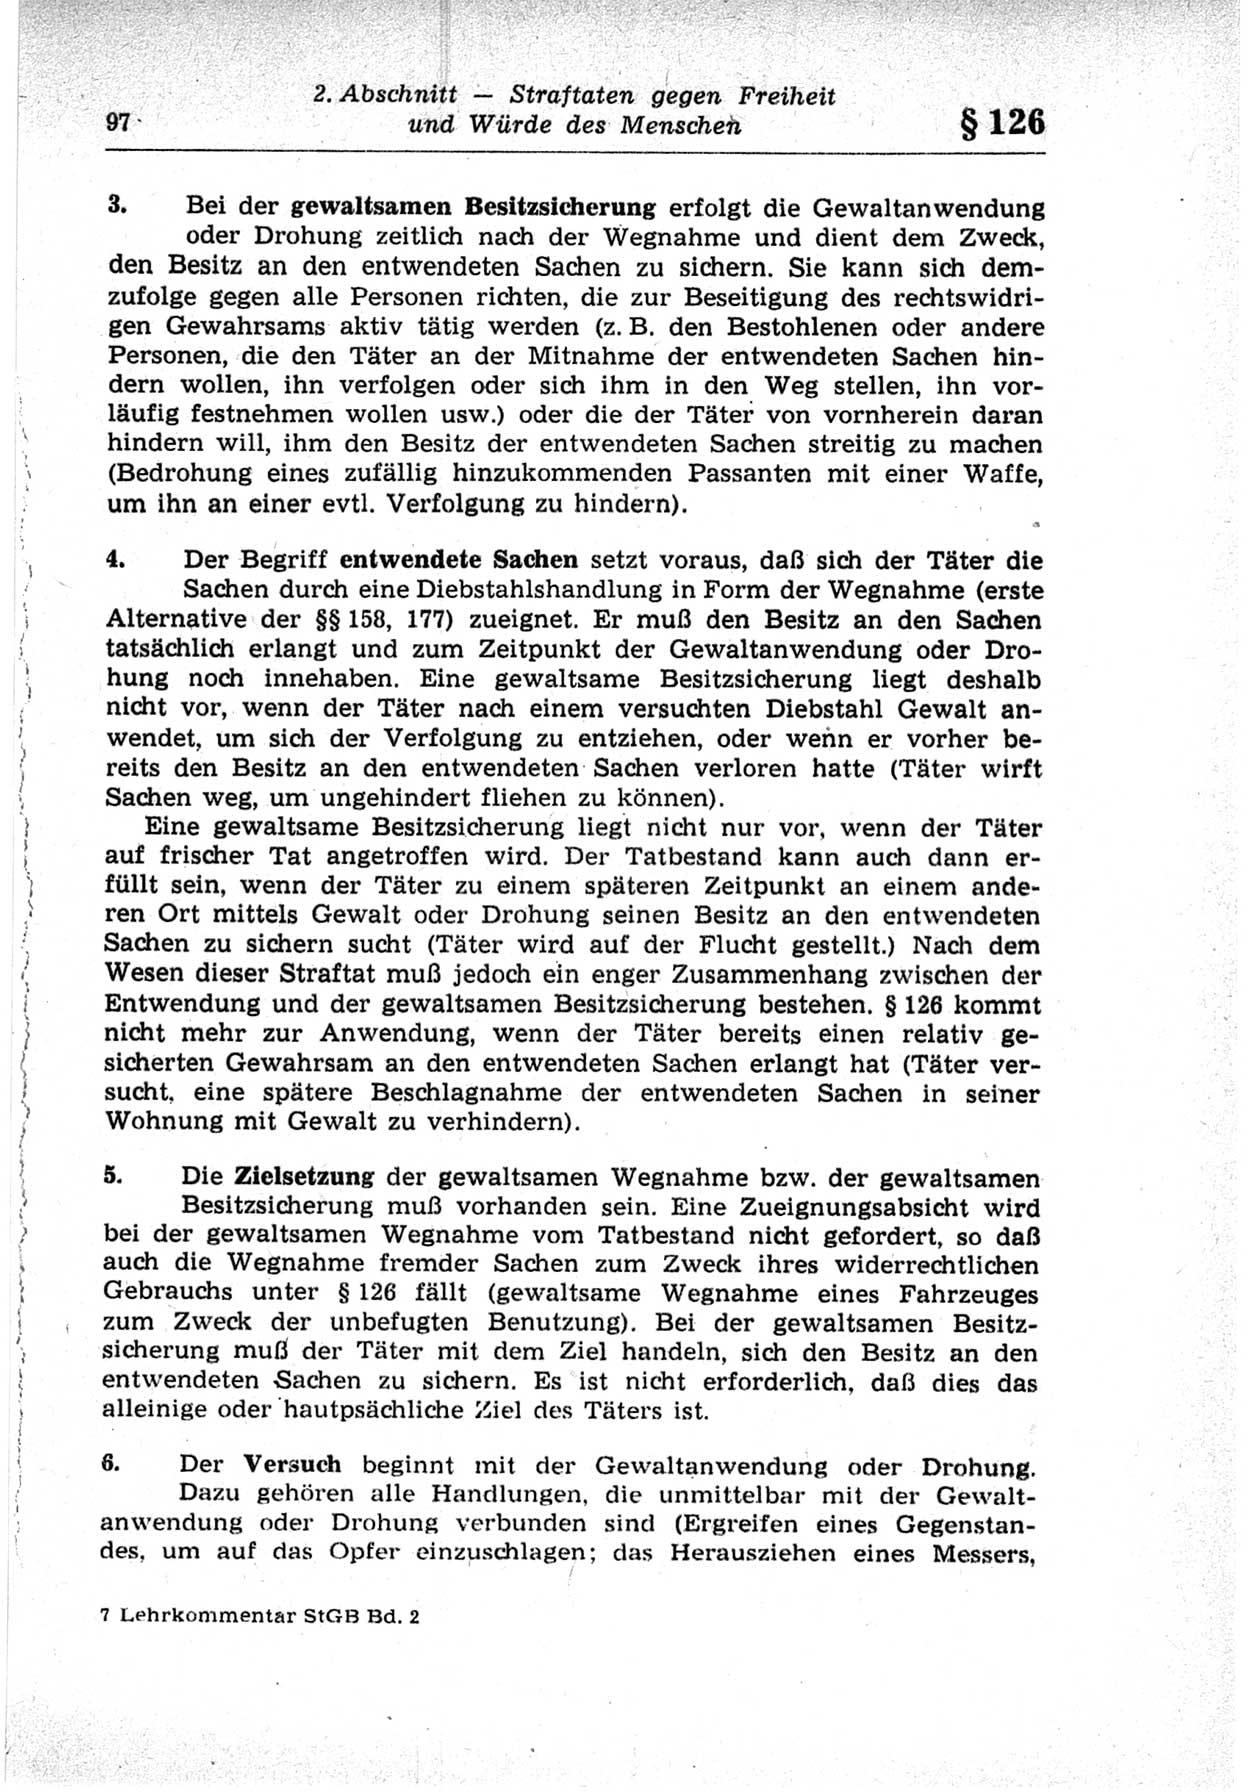 Strafrecht der Deutschen Demokratischen Republik (DDR), Lehrkommentar zum Strafgesetzbuch (StGB), Besonderer Teil 1969, Seite 97 (Strafr. DDR Lehrkomm. StGB BT 1969, S. 97)